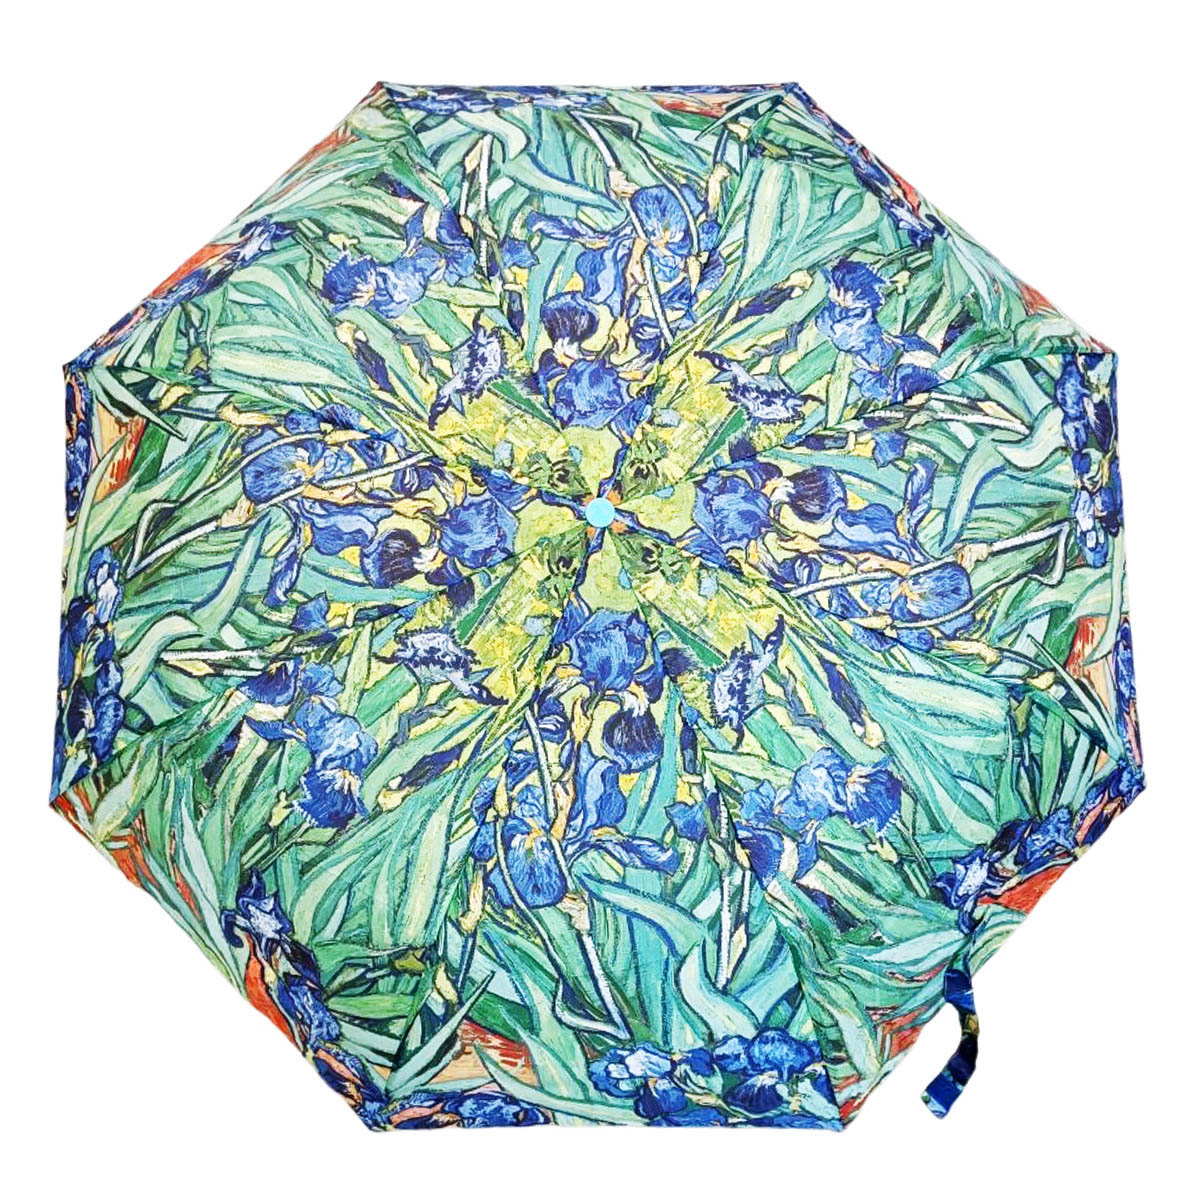 Parapluie mini automatique \'Vincent Van Gogh\' (Iris) - fermé 30 cm, ouvert 100 cm - [R8665]